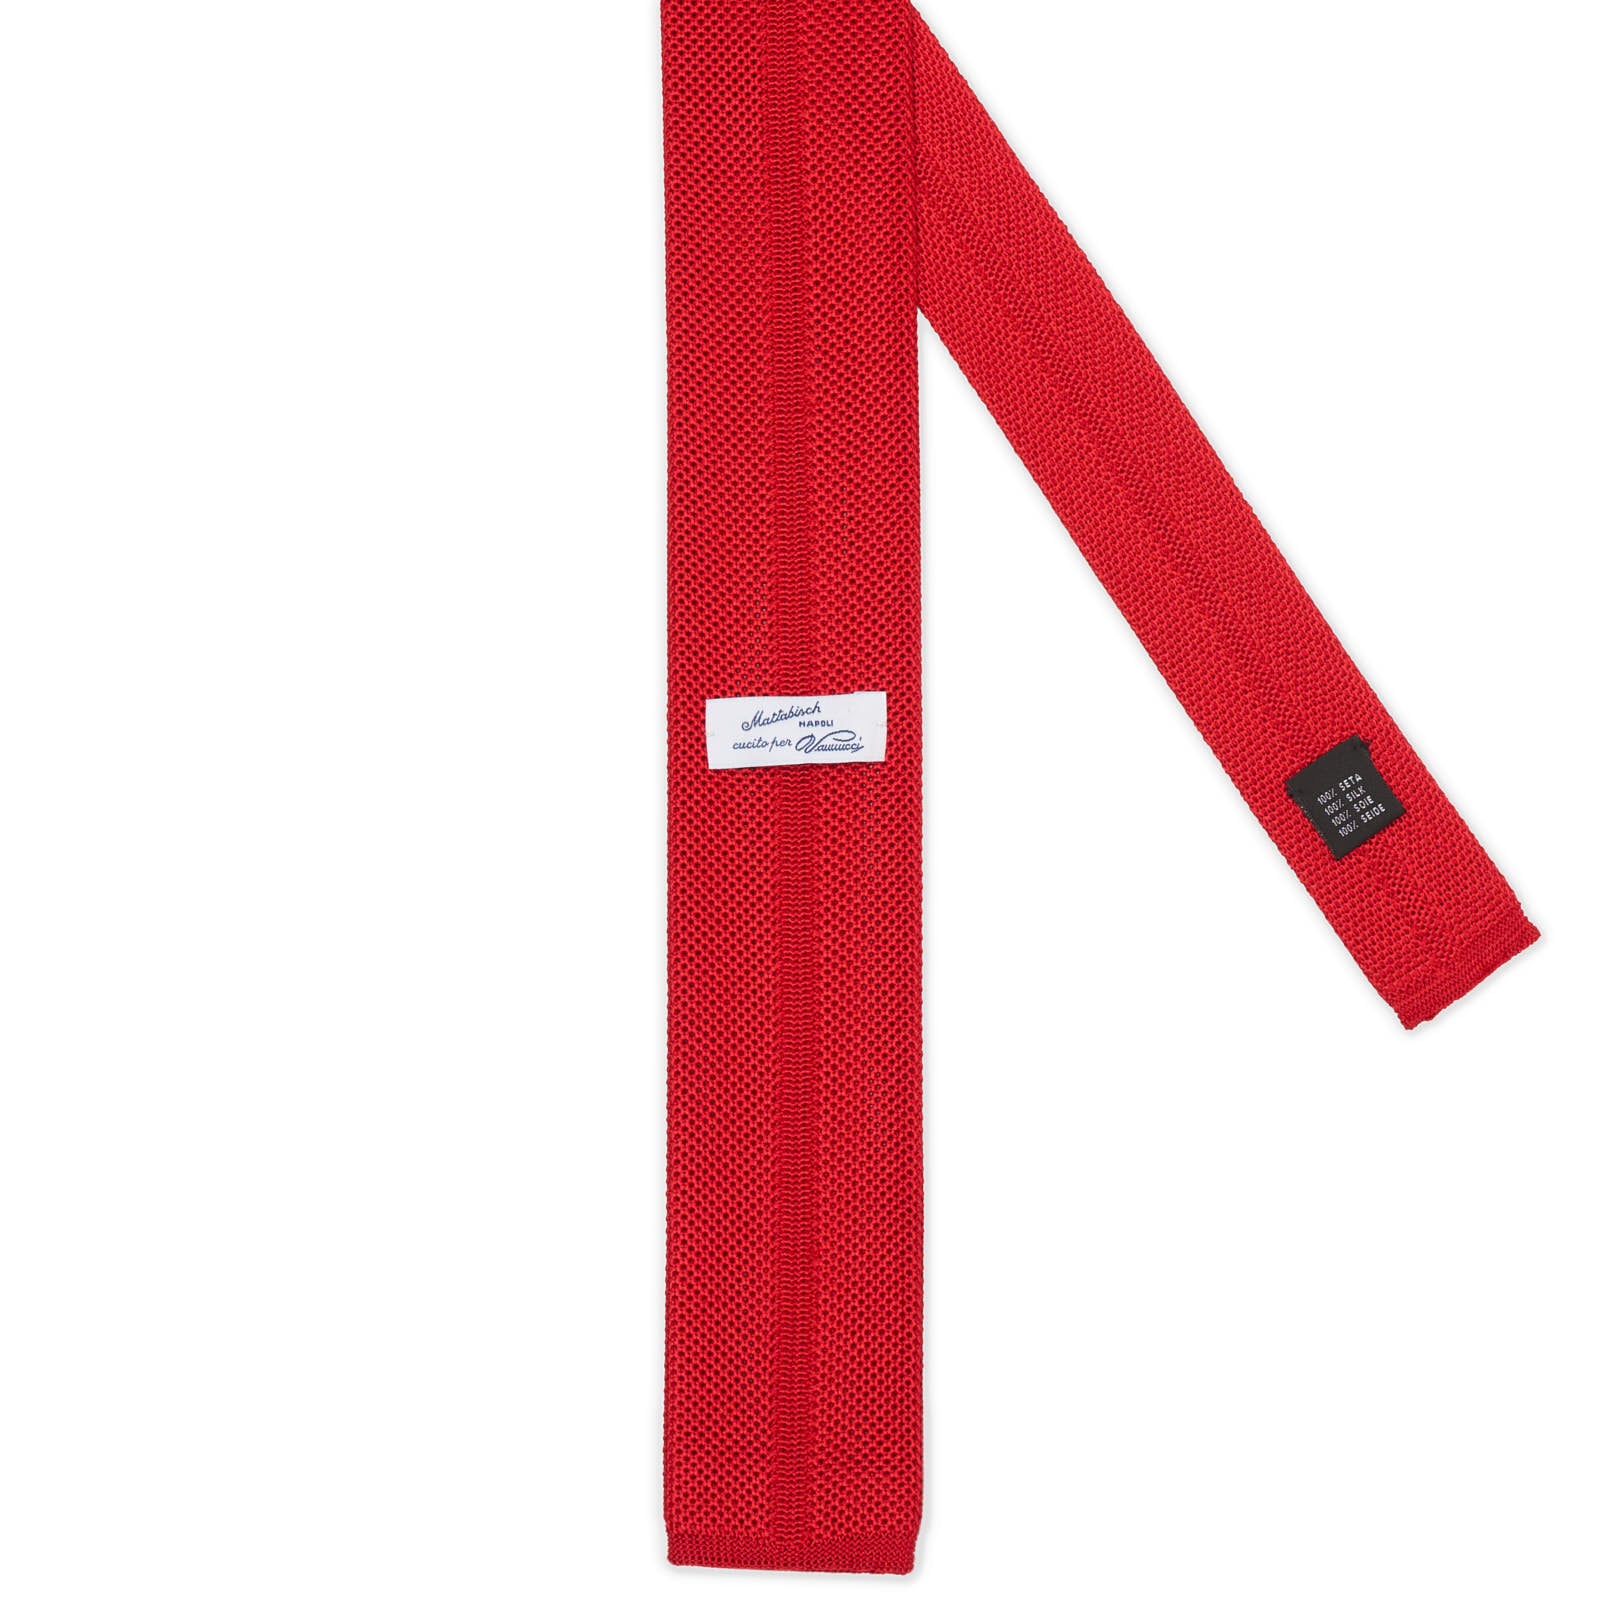 MATTABISCH FOR VANNUCCI Red Silk Knit Tie NEW